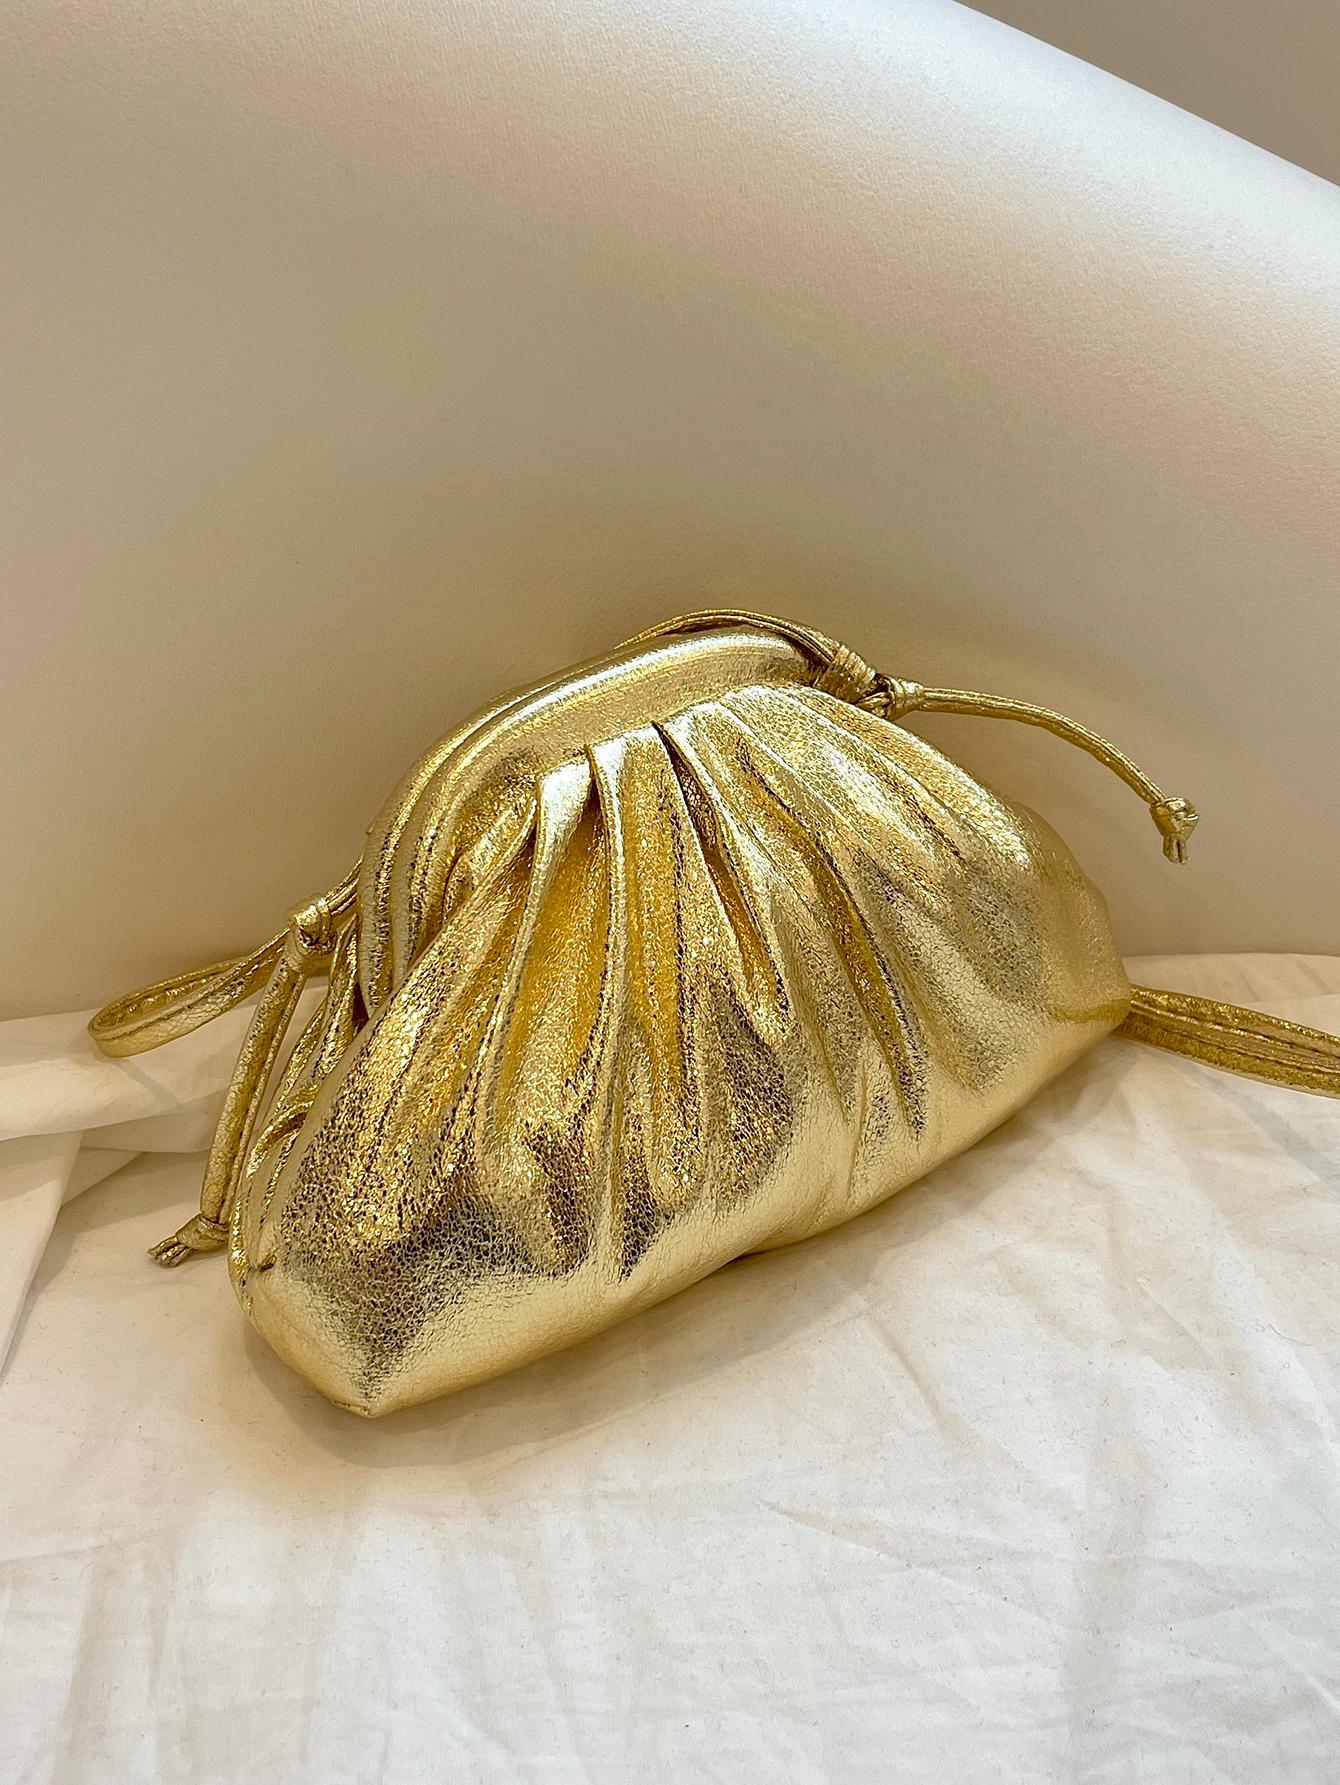 Мини-сумка со складками Металлик Funky PU, золото блестящая блестящая сумка стразы в форме облака роскошная вечерняя сумка клатч для ужина вечеринки кошелек женская сумка через плечо су